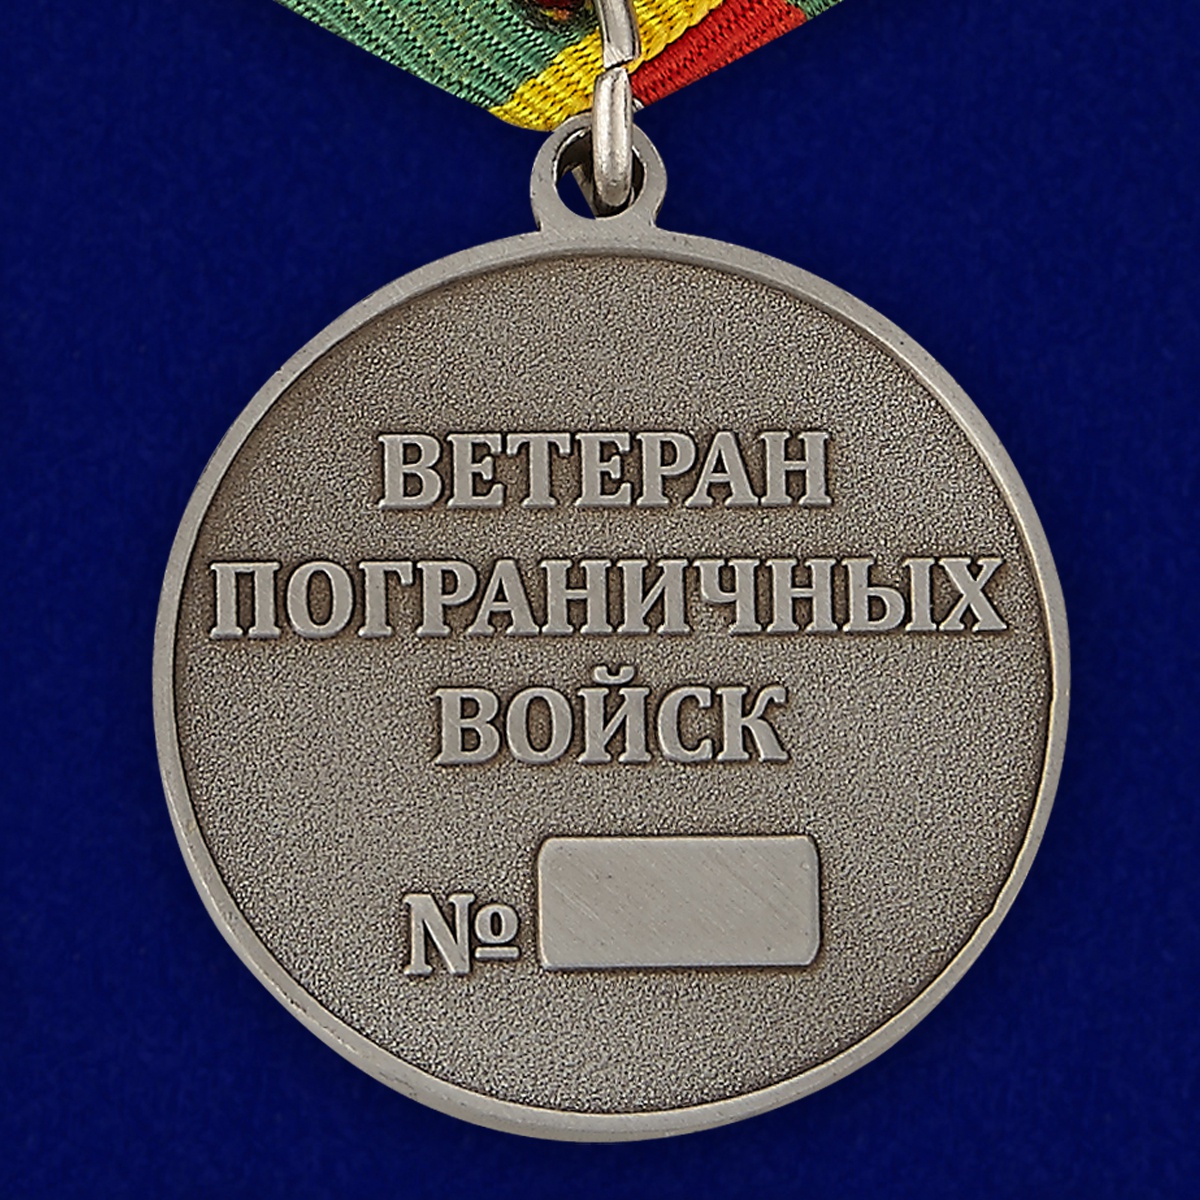 Медаль Ветеран Пограничных войск 